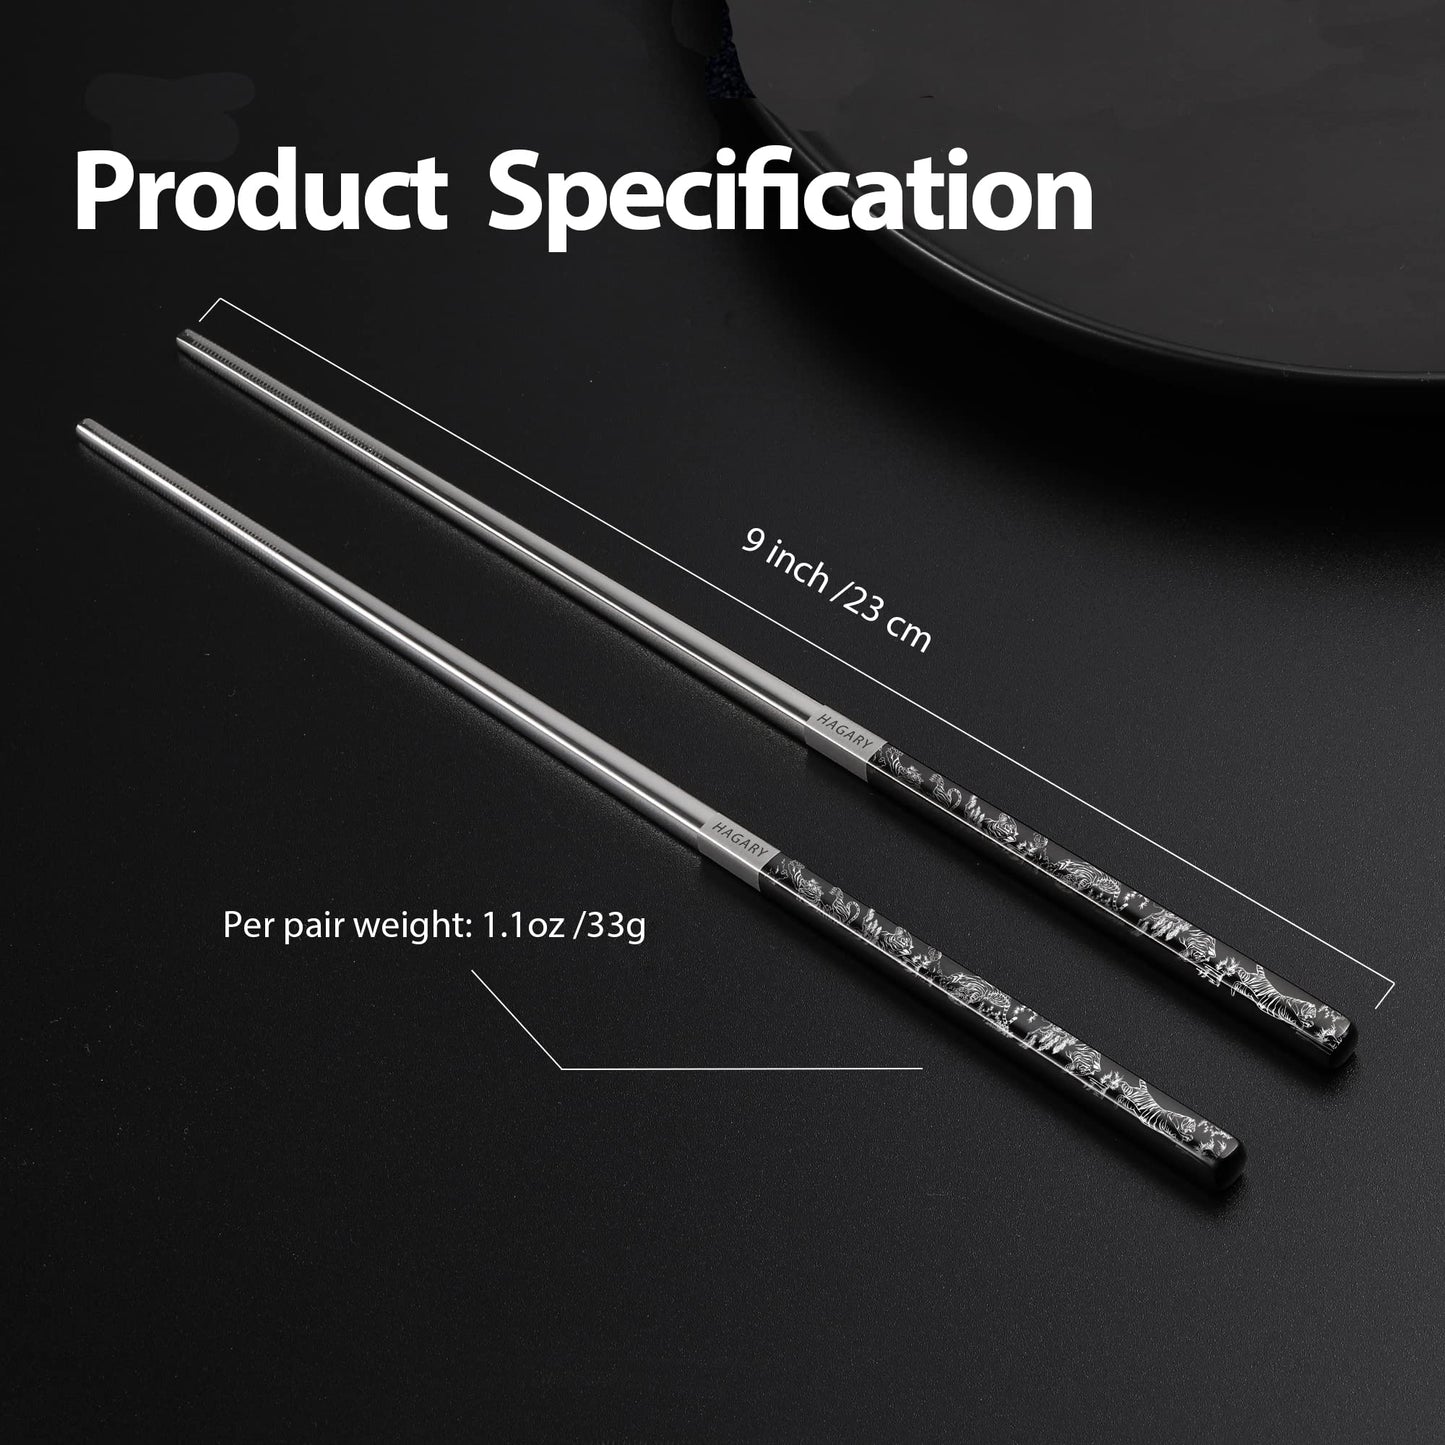 Tiger Metal Reusable Chopsticks